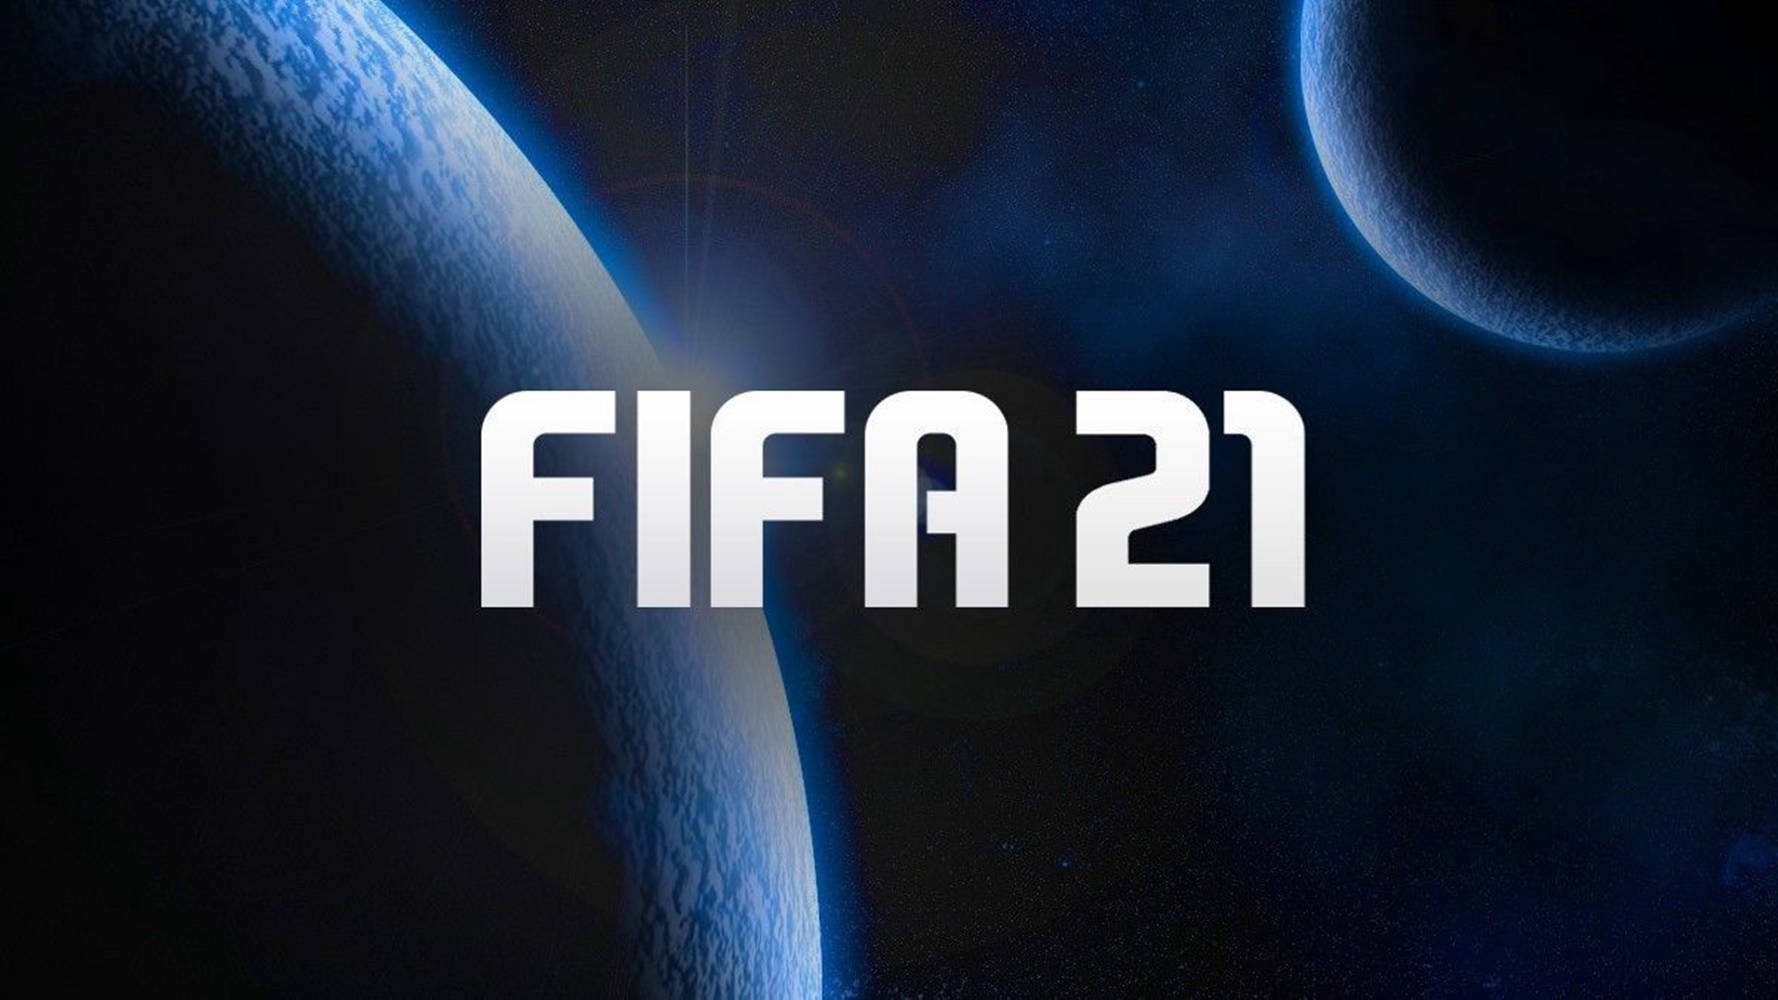 Fifa21-logotypen På En Mörk Bakgrund. Wallpaper